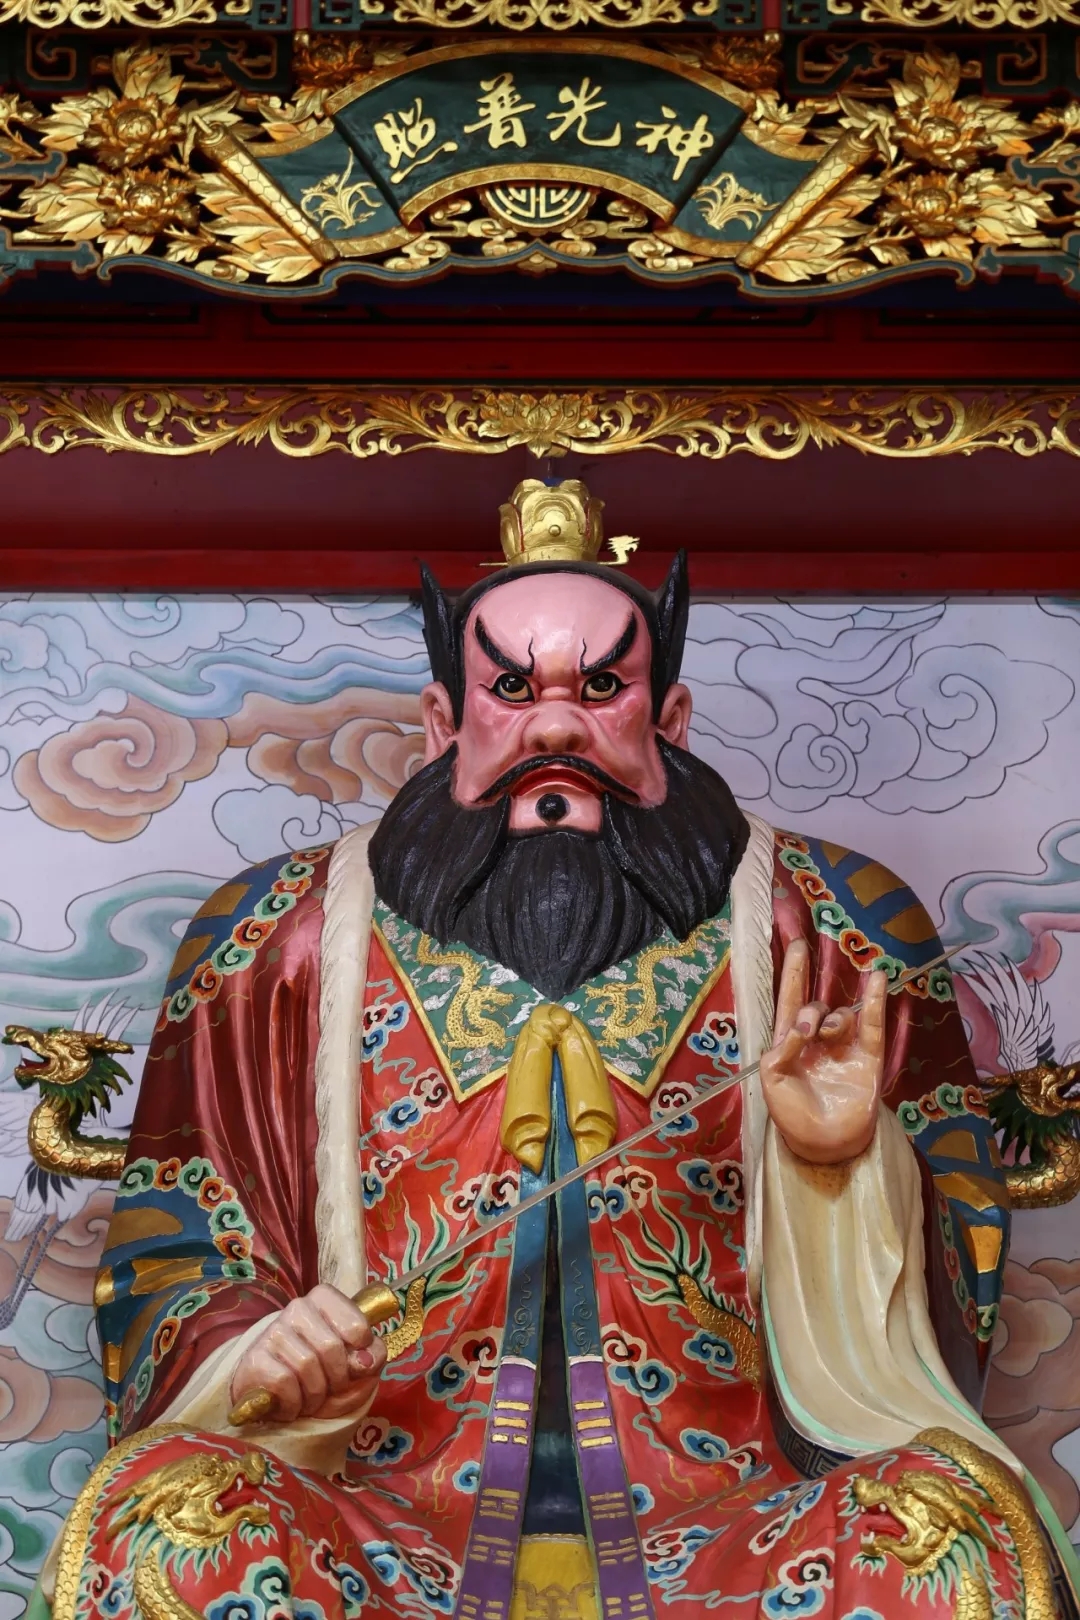 据载,汉安元年(142年),太上老君降临四川鹤鸣山,指派老祖天师"摄邪归